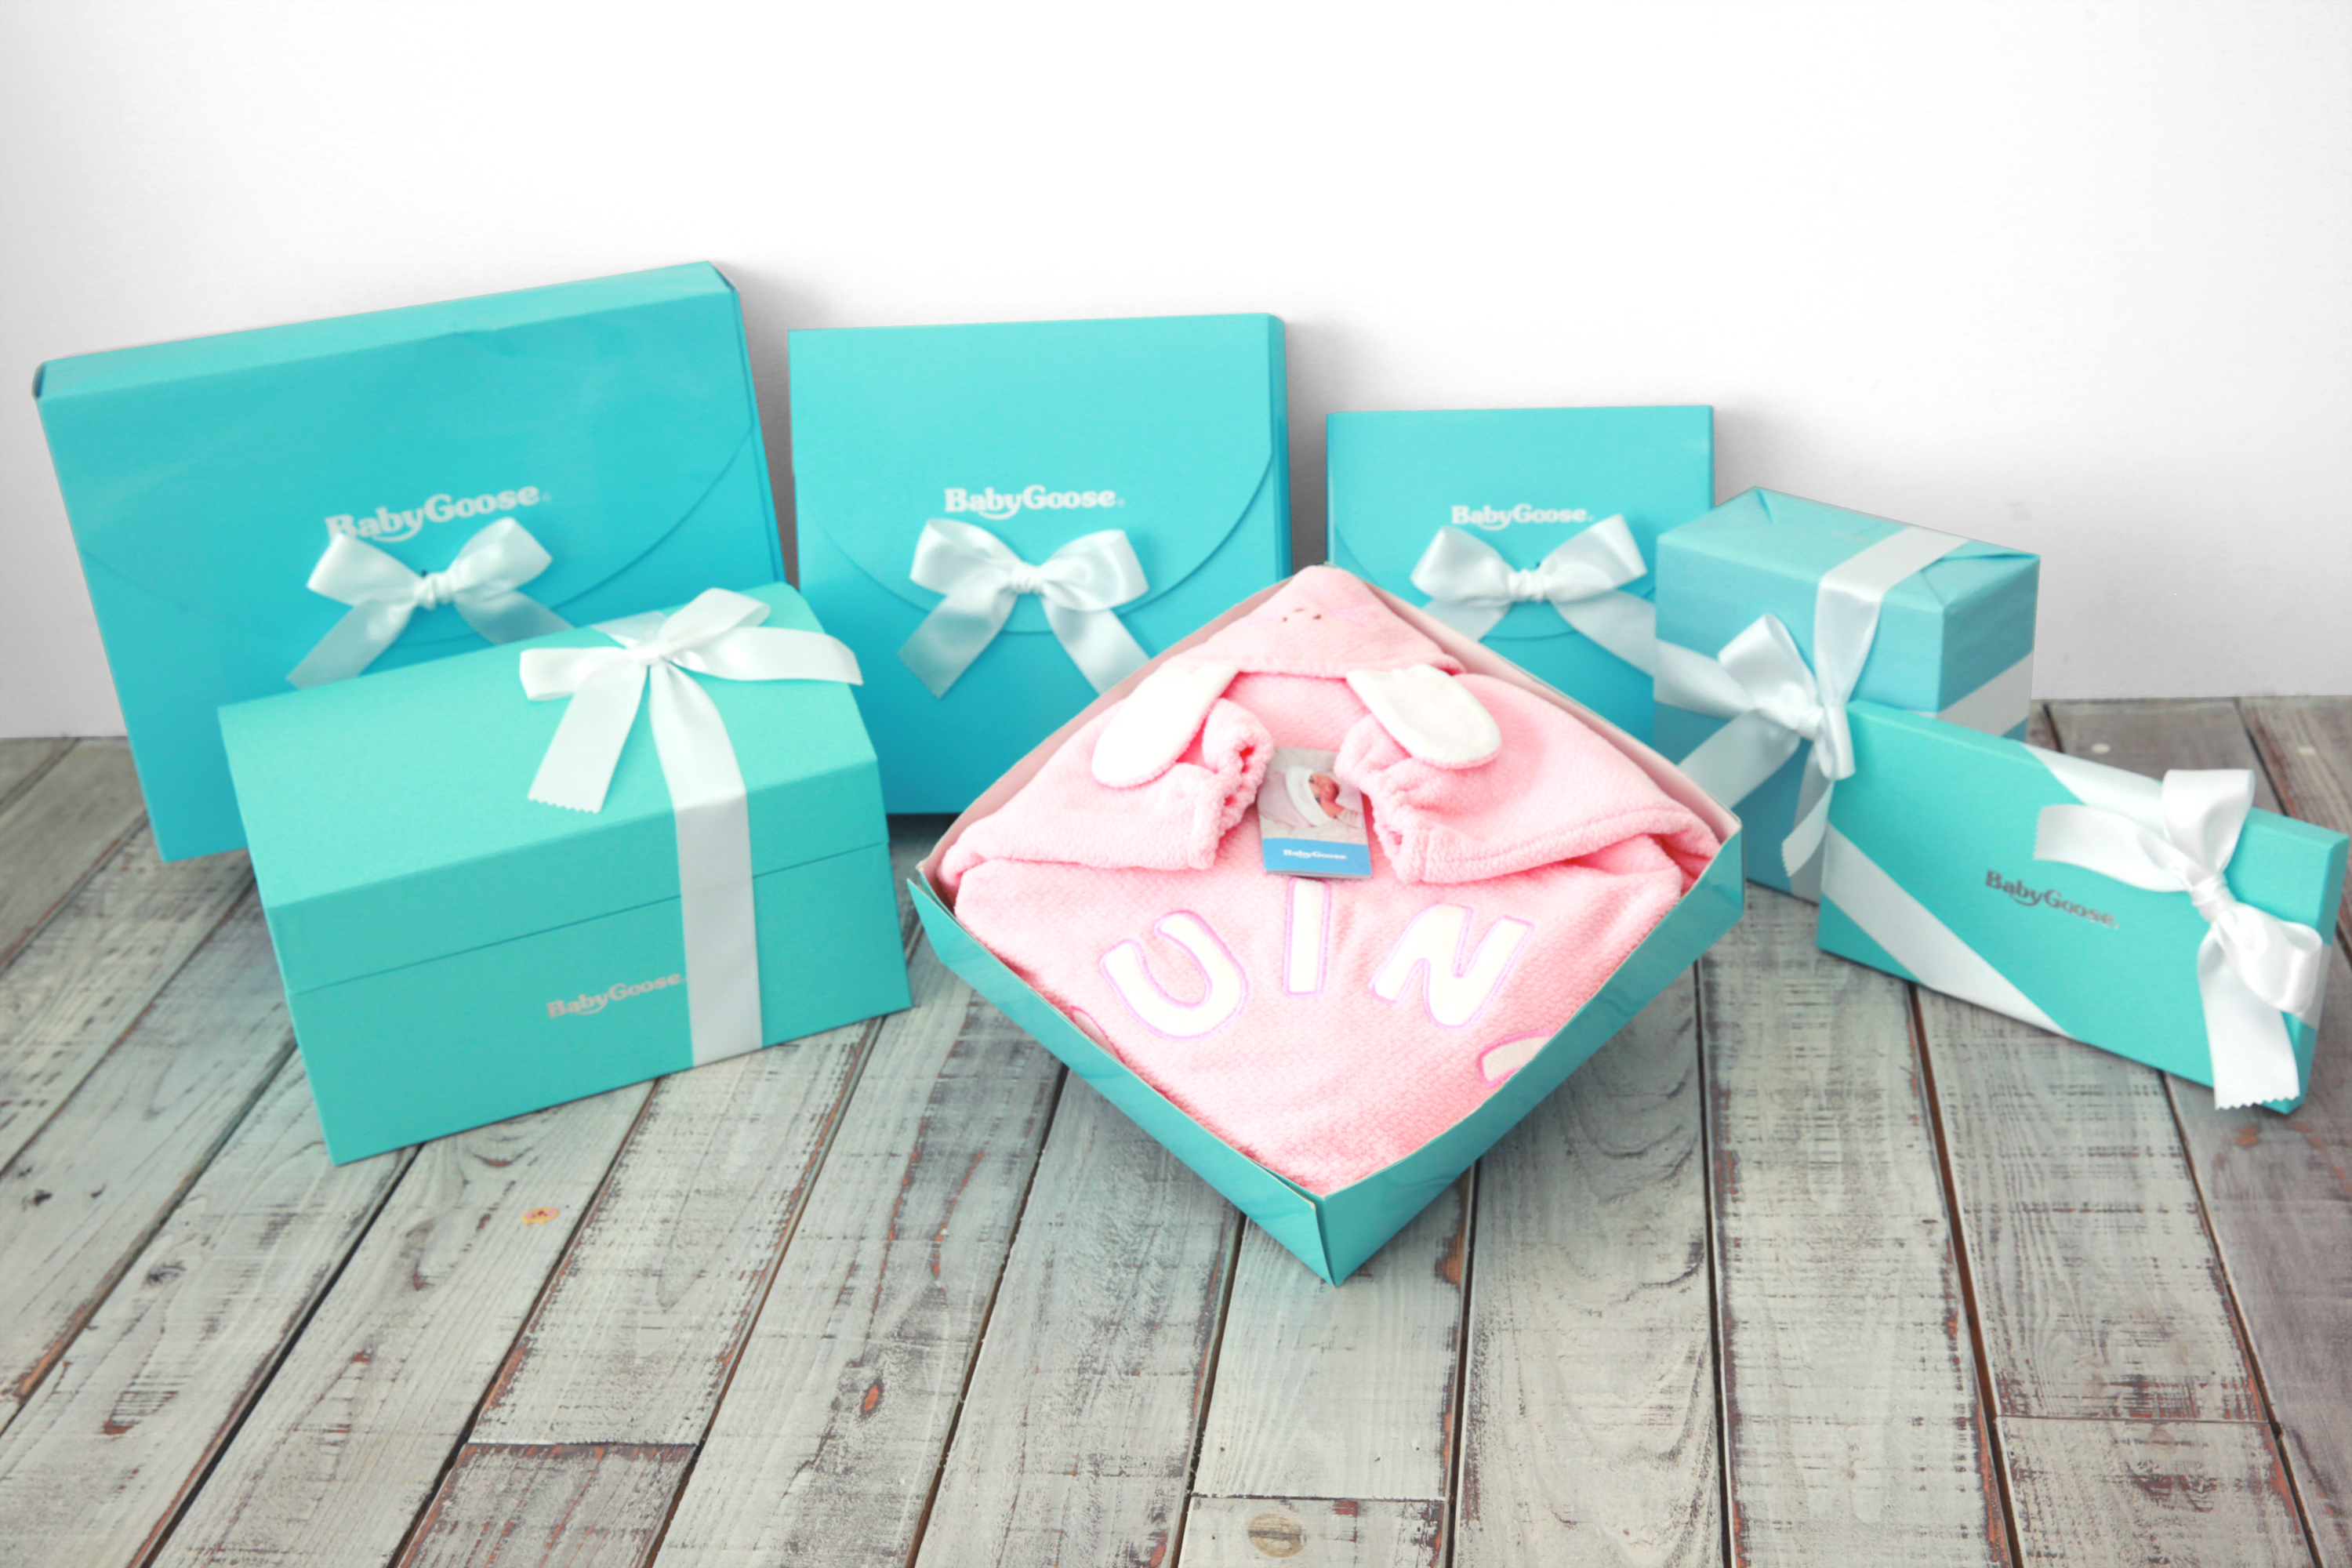 妊婦さんにはコレが喜ばれる 妊娠祝いにおすすめのプレゼント5選 喜ばれる出産祝いの情報サイト ベビギフ